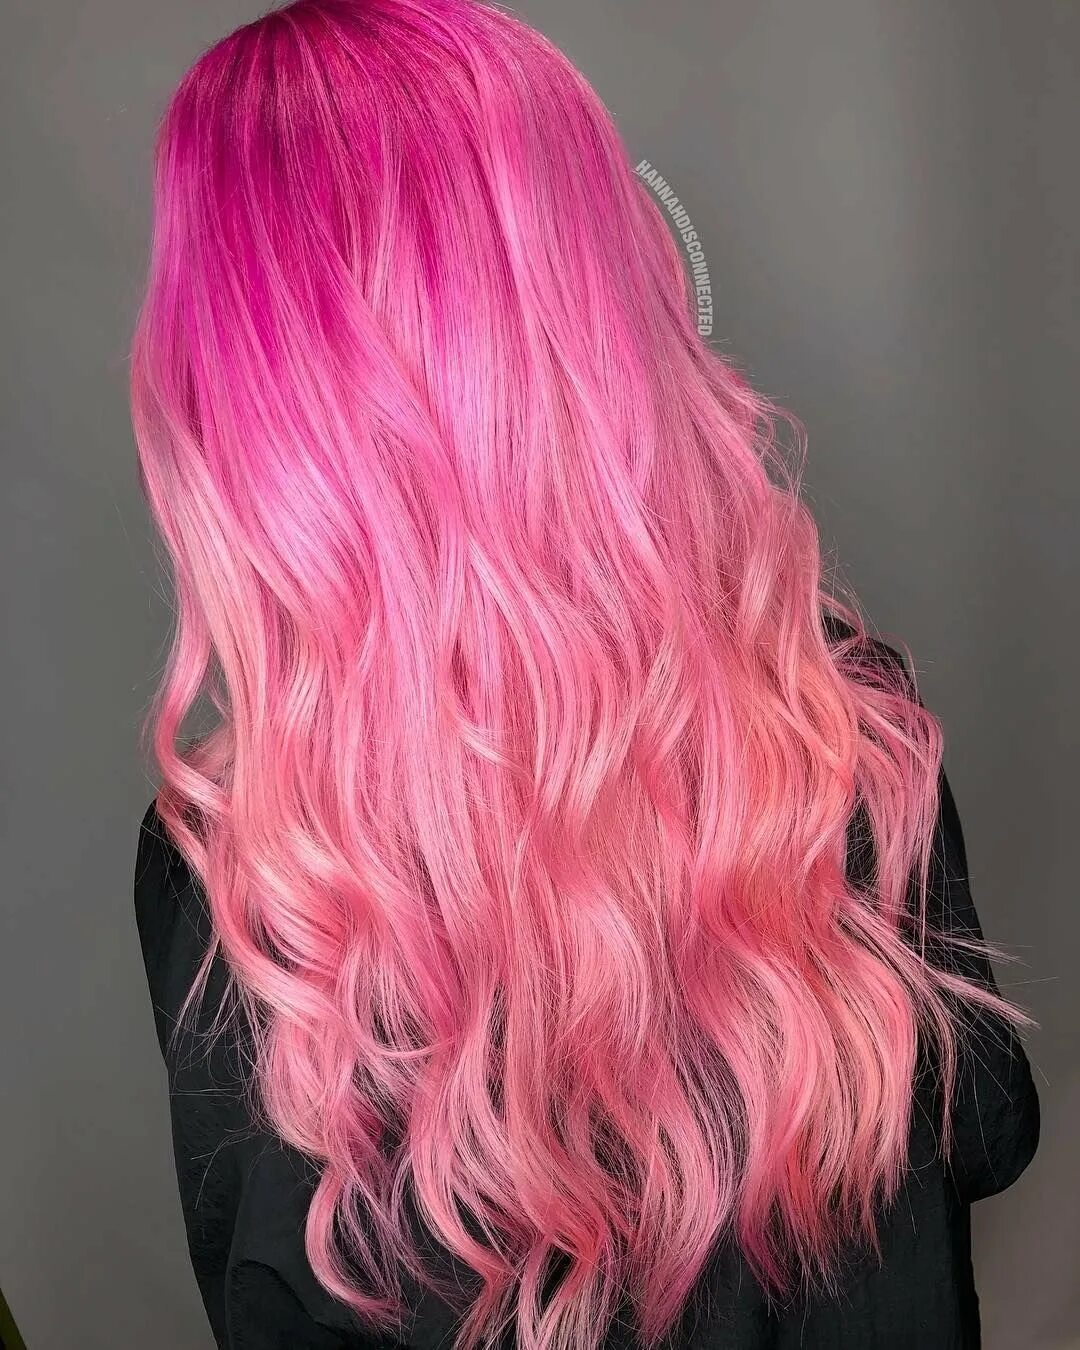 Волосы стали розовыми